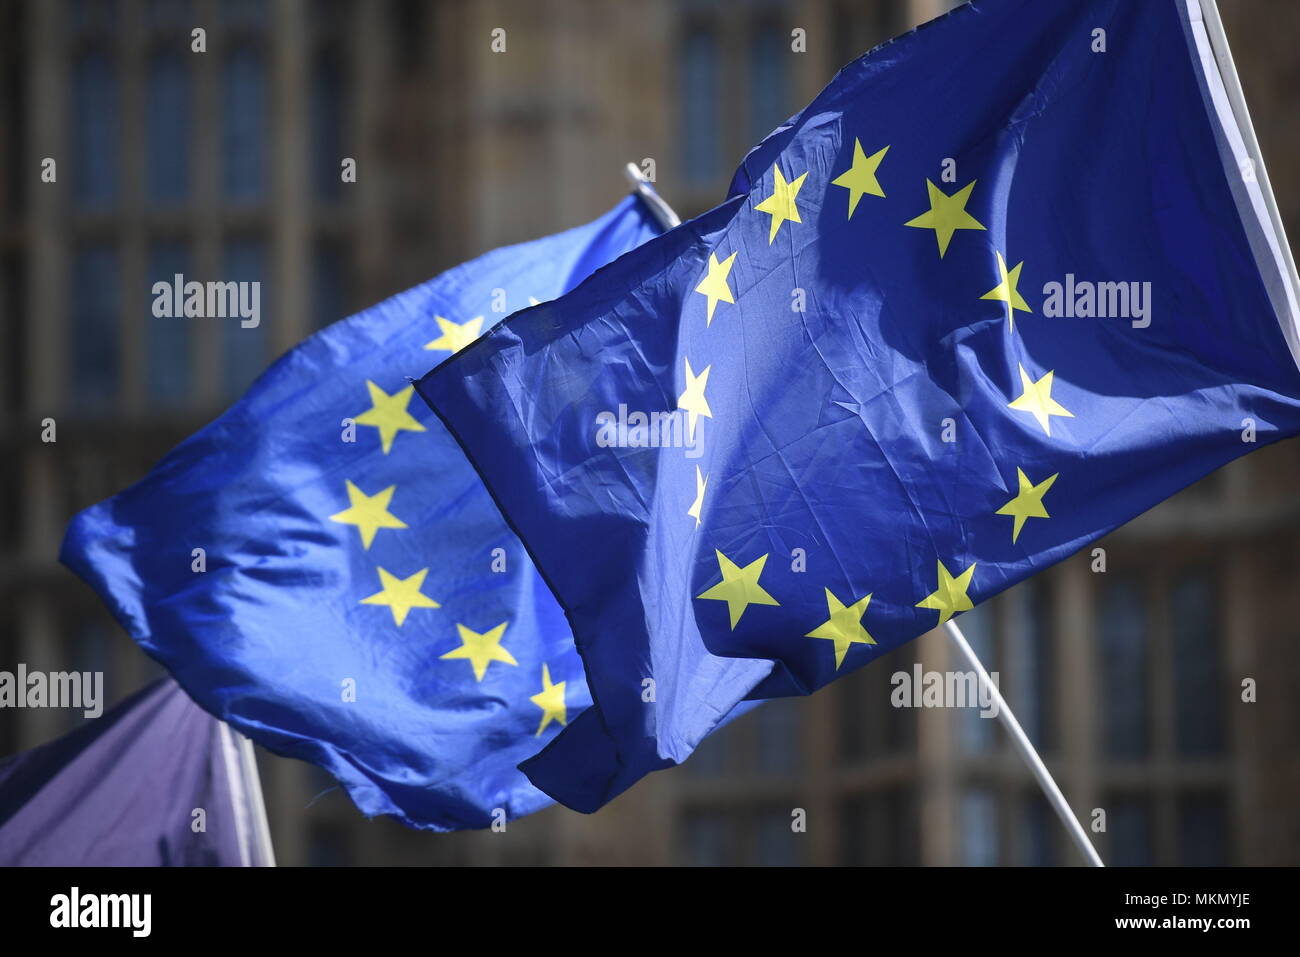 Aktivisten wave Europäische Union Flaggen außerhalb des Houses of Parliament in Westminster, London. Stockfoto